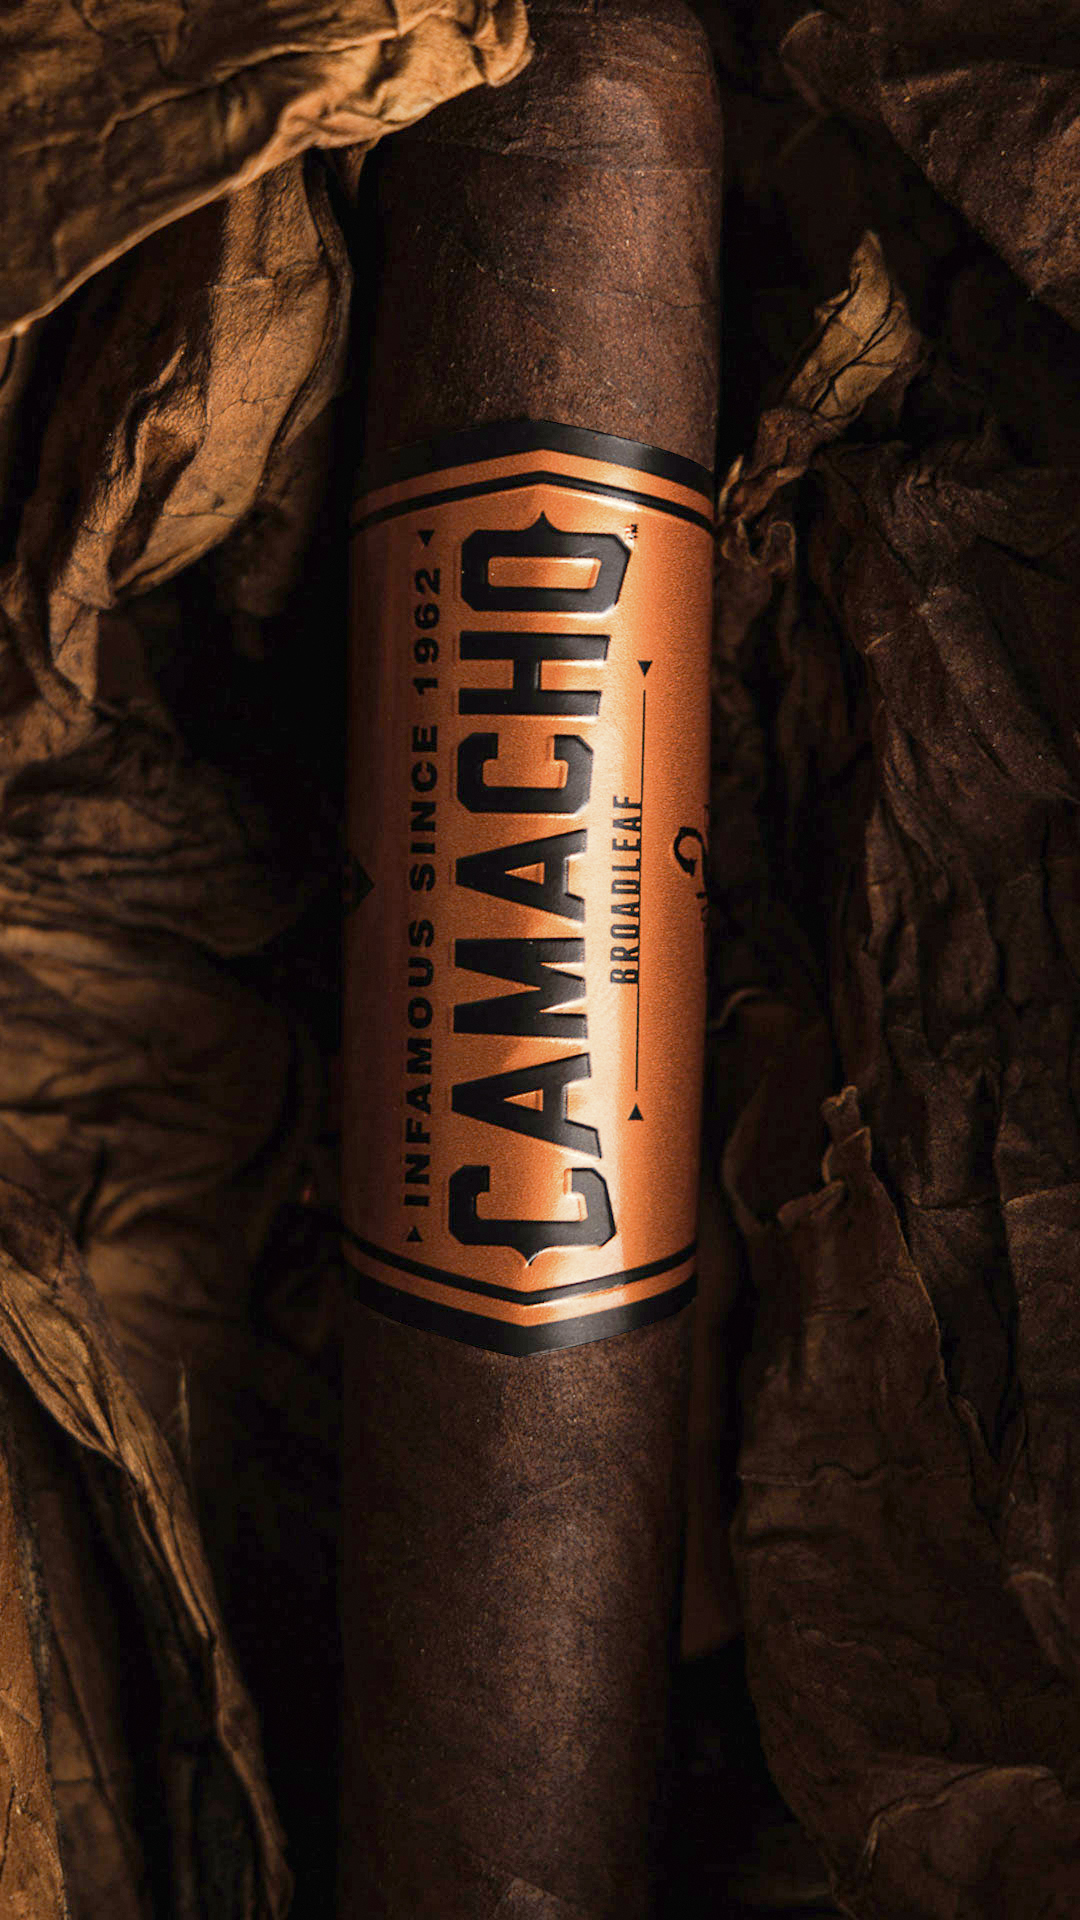 A Camacho Broadleaf cigar with a Honduran Broadleaf wrapper and an oversized Honduran Broadleaf wrapper